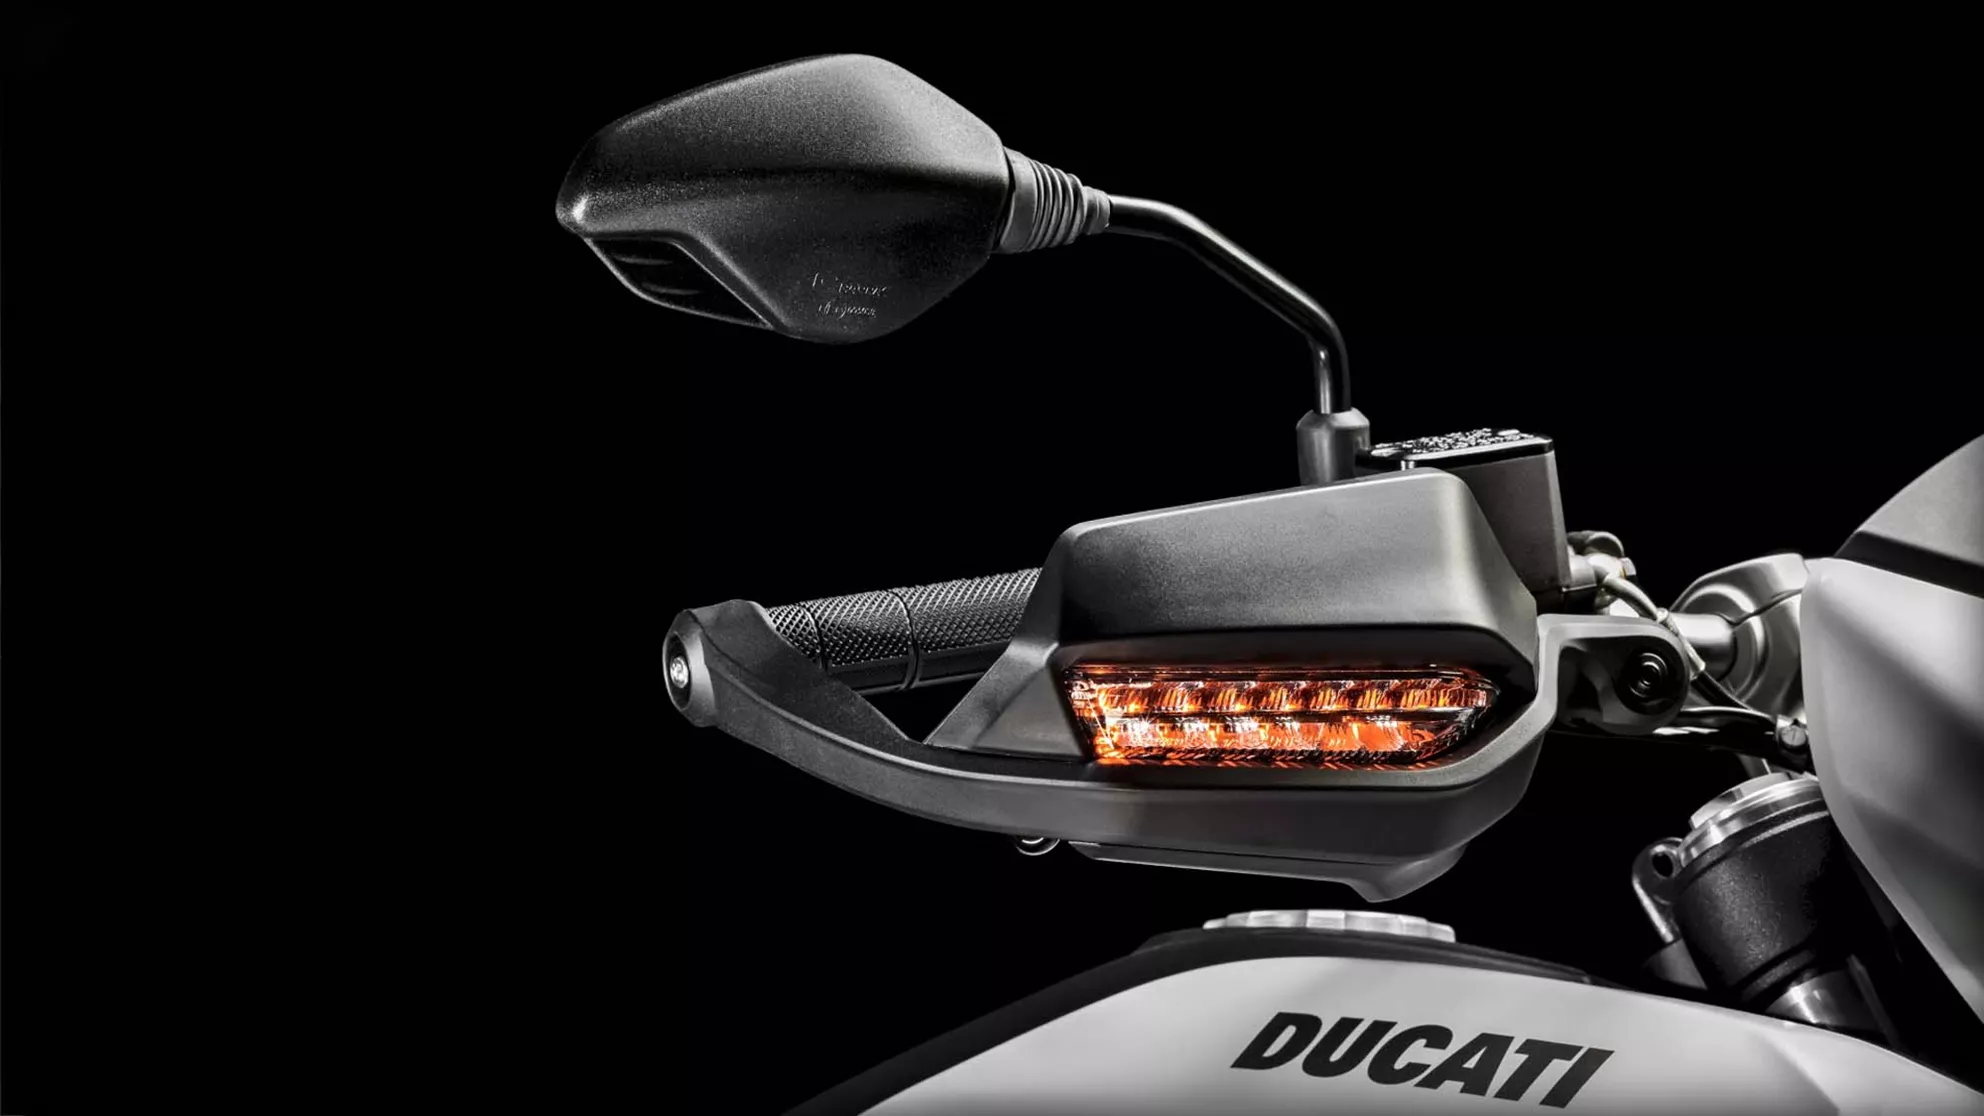 Ducati Hypermotard 939 - Immagine 7